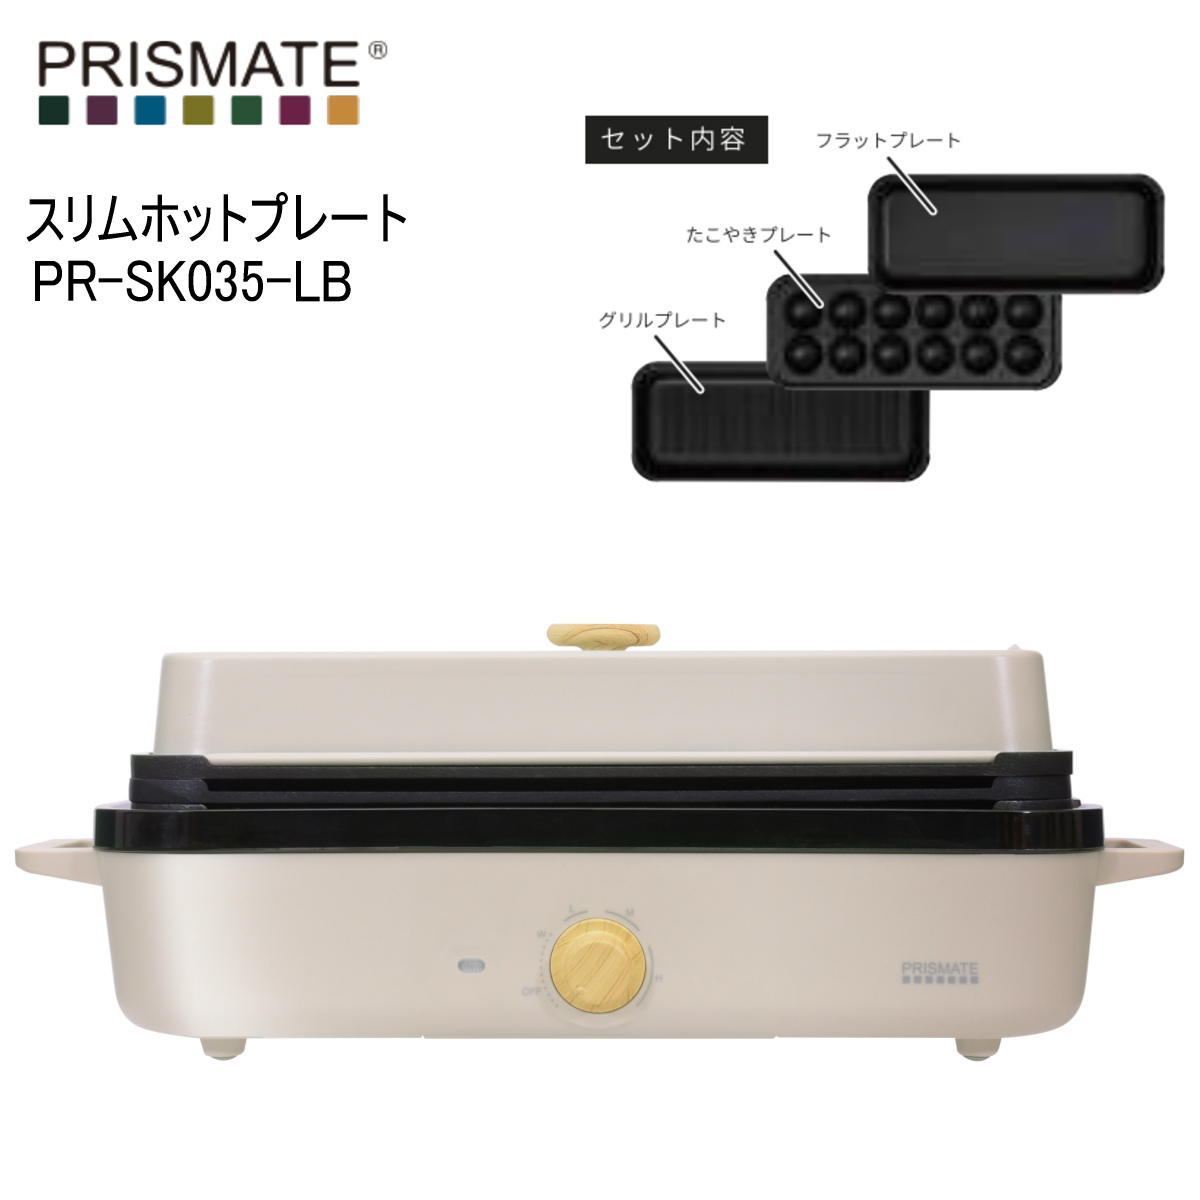 PRISMATE プリズメイト PR-SK035-LB ライトベージュ スリムホットプレート プレート3種 楽しく使えるレシピブック付